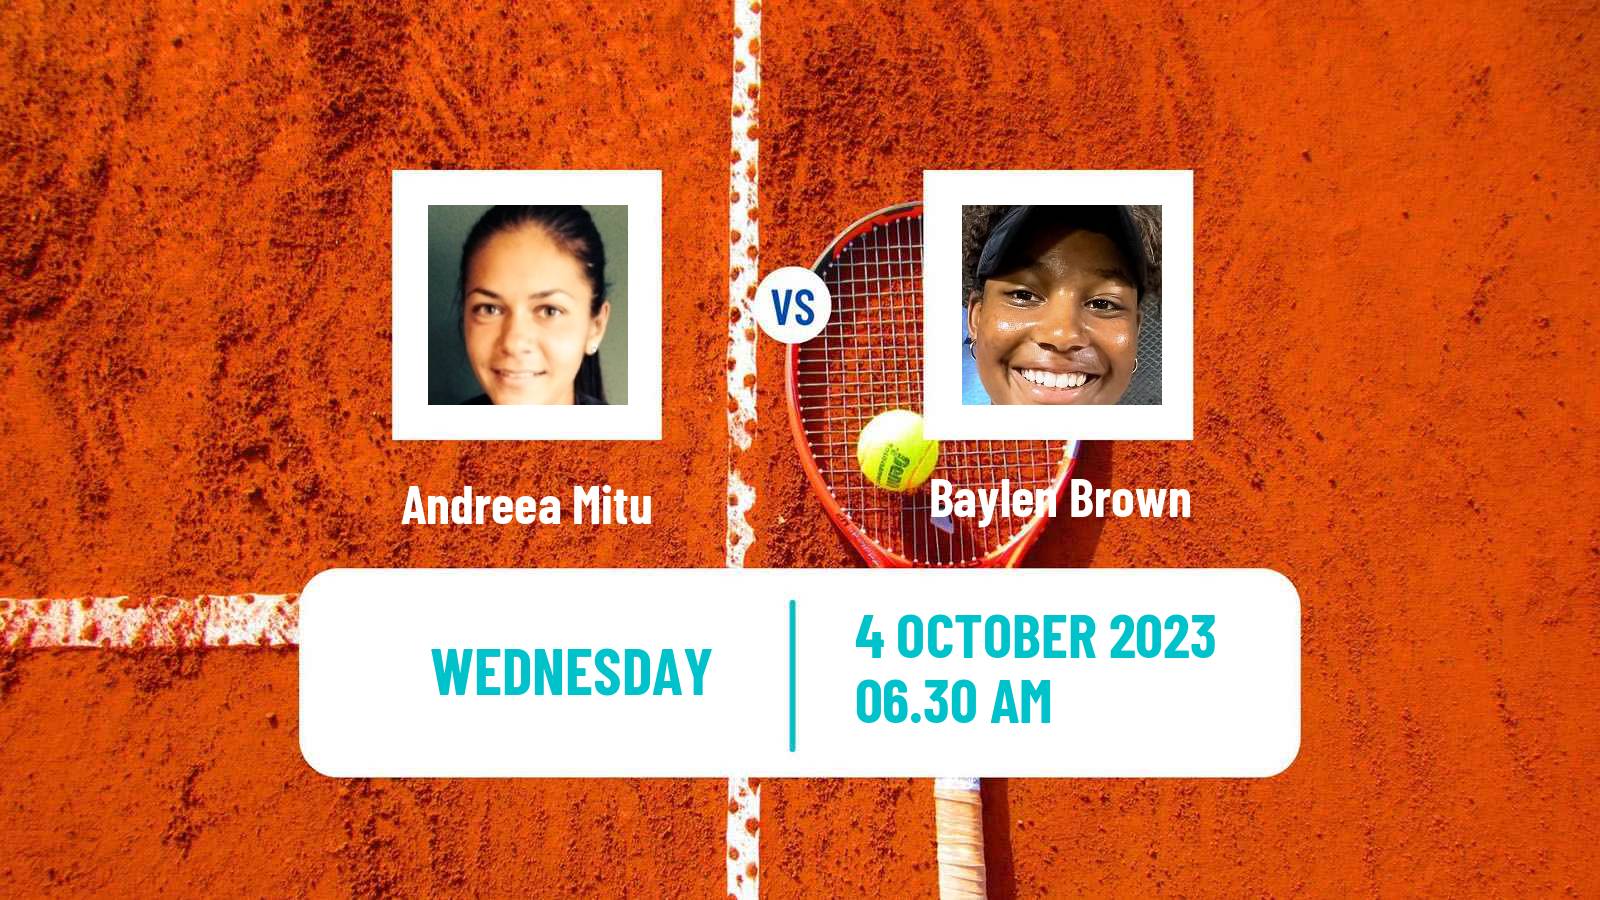 Tennis ITF W40 Lisbon Women Andreea Mitu - Baylen Brown